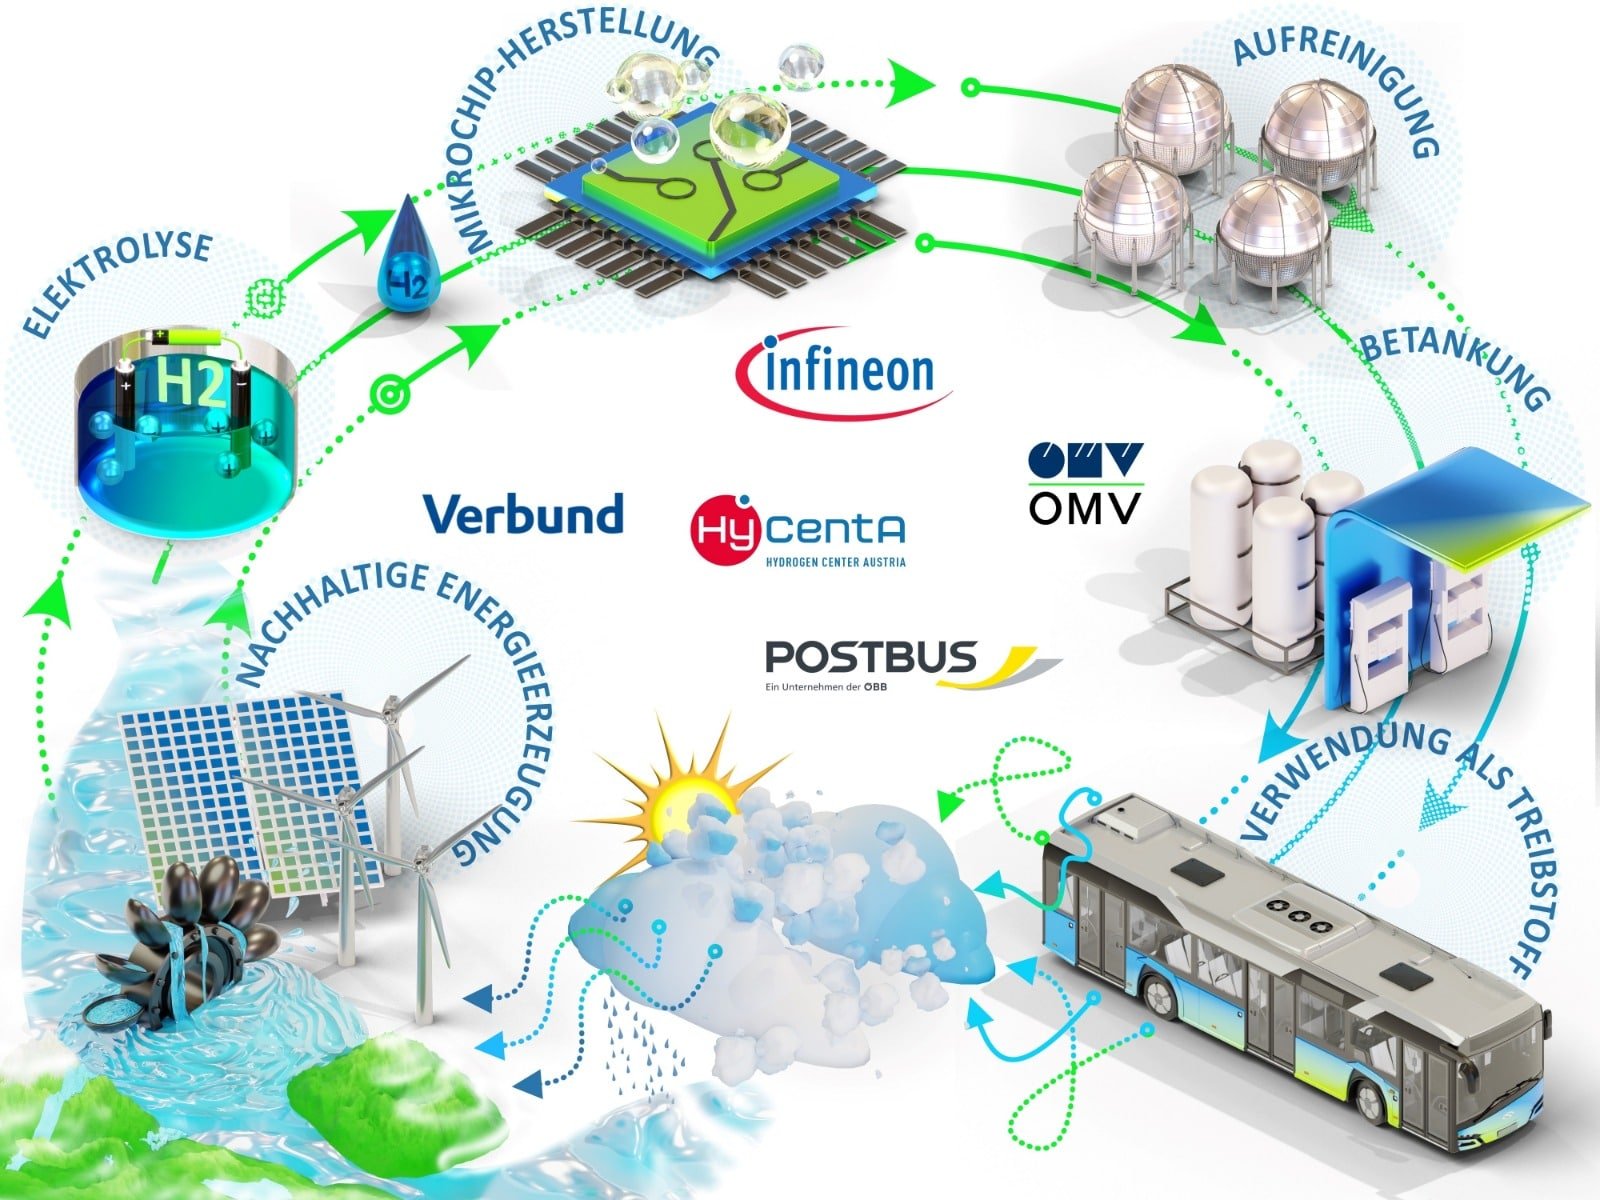 Als Partner arbeiten mit dem Land Kärnten für H2Carinthia Verbund, Infineon, OMV und Postbus zusammen.